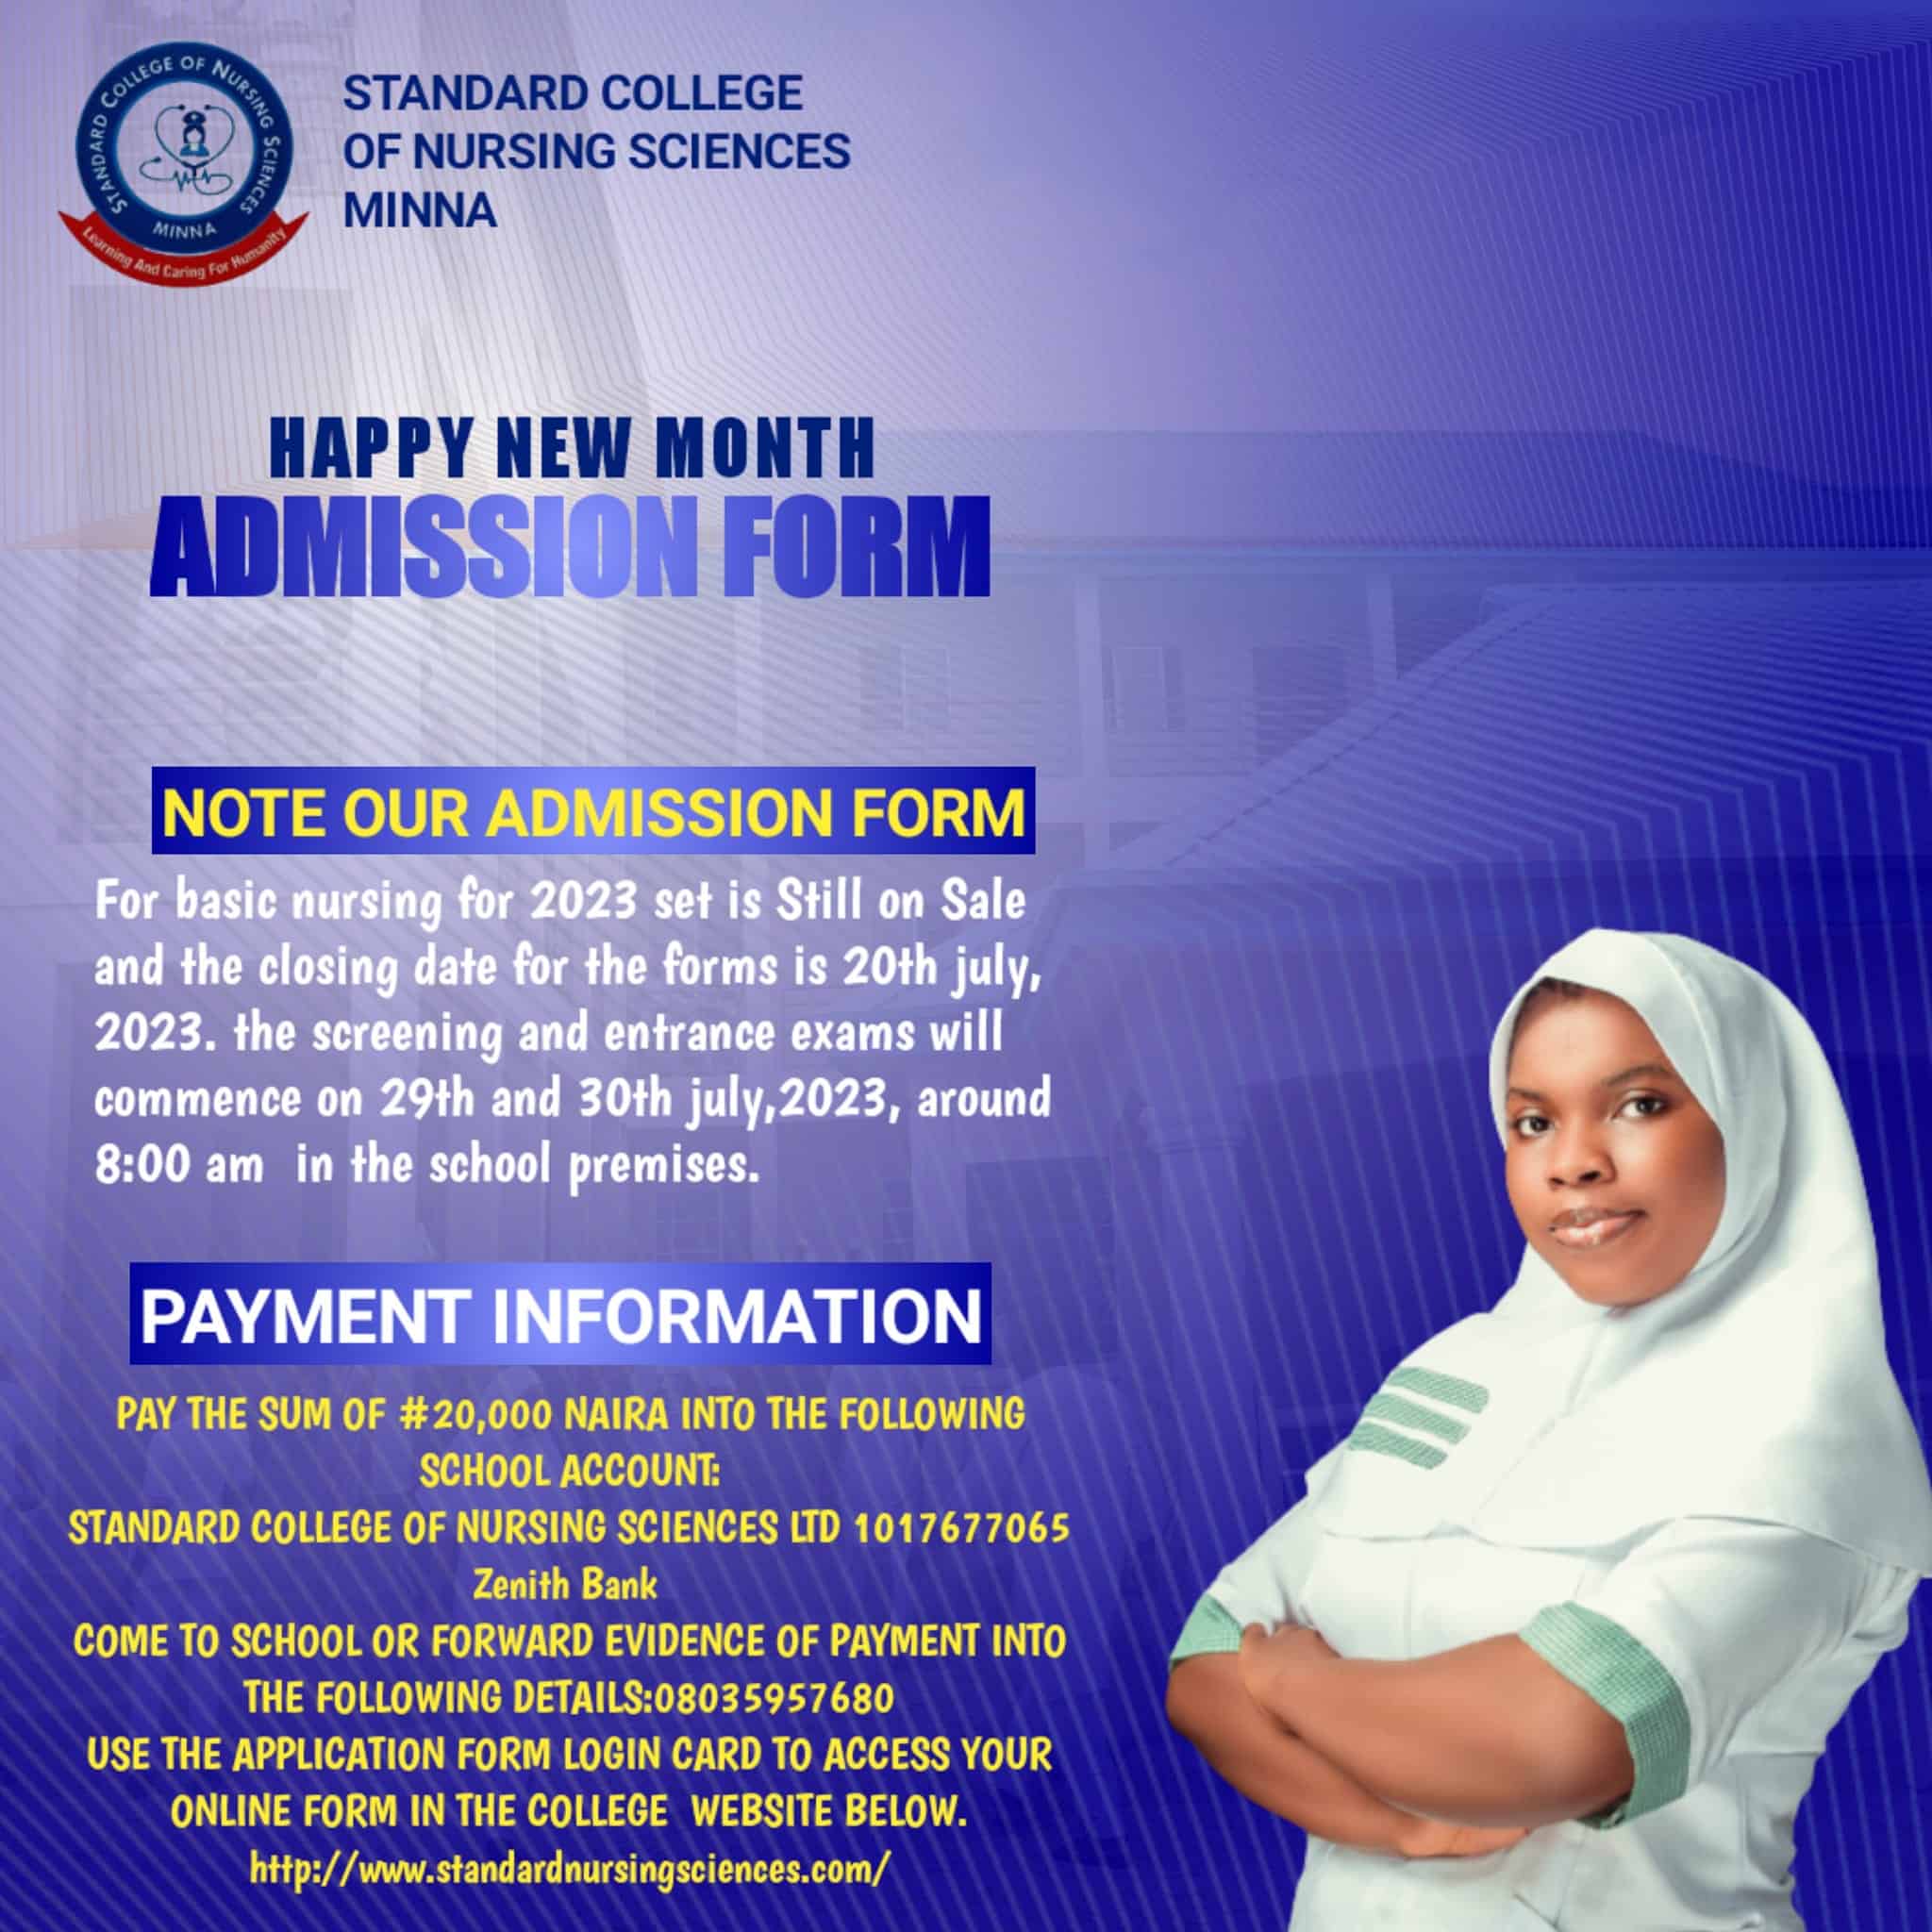 Standard College of Nursing Sciences Admission Form